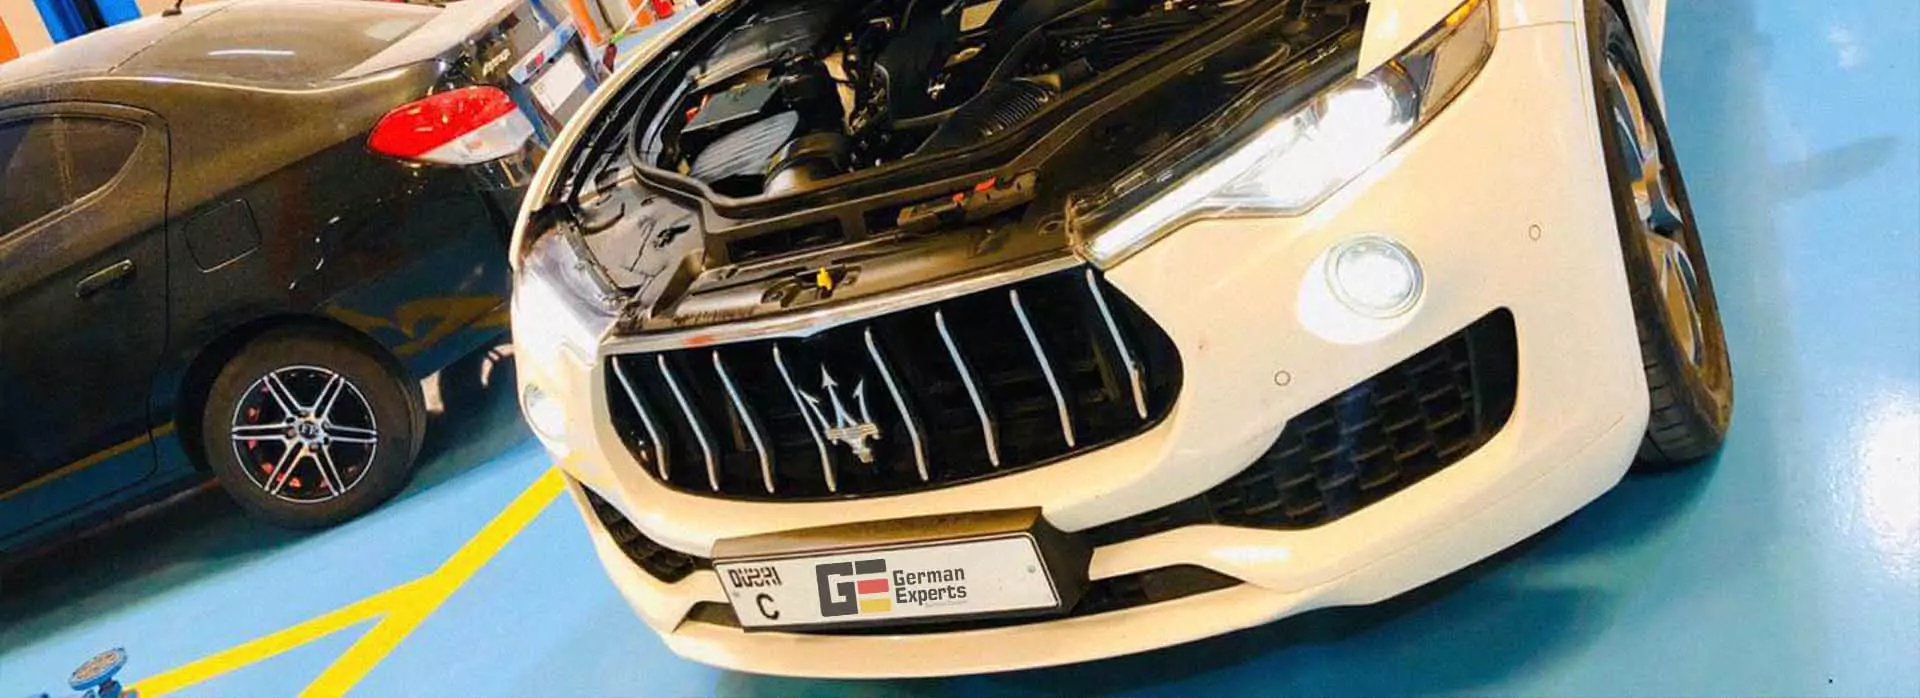 Maserati Repair Dubai